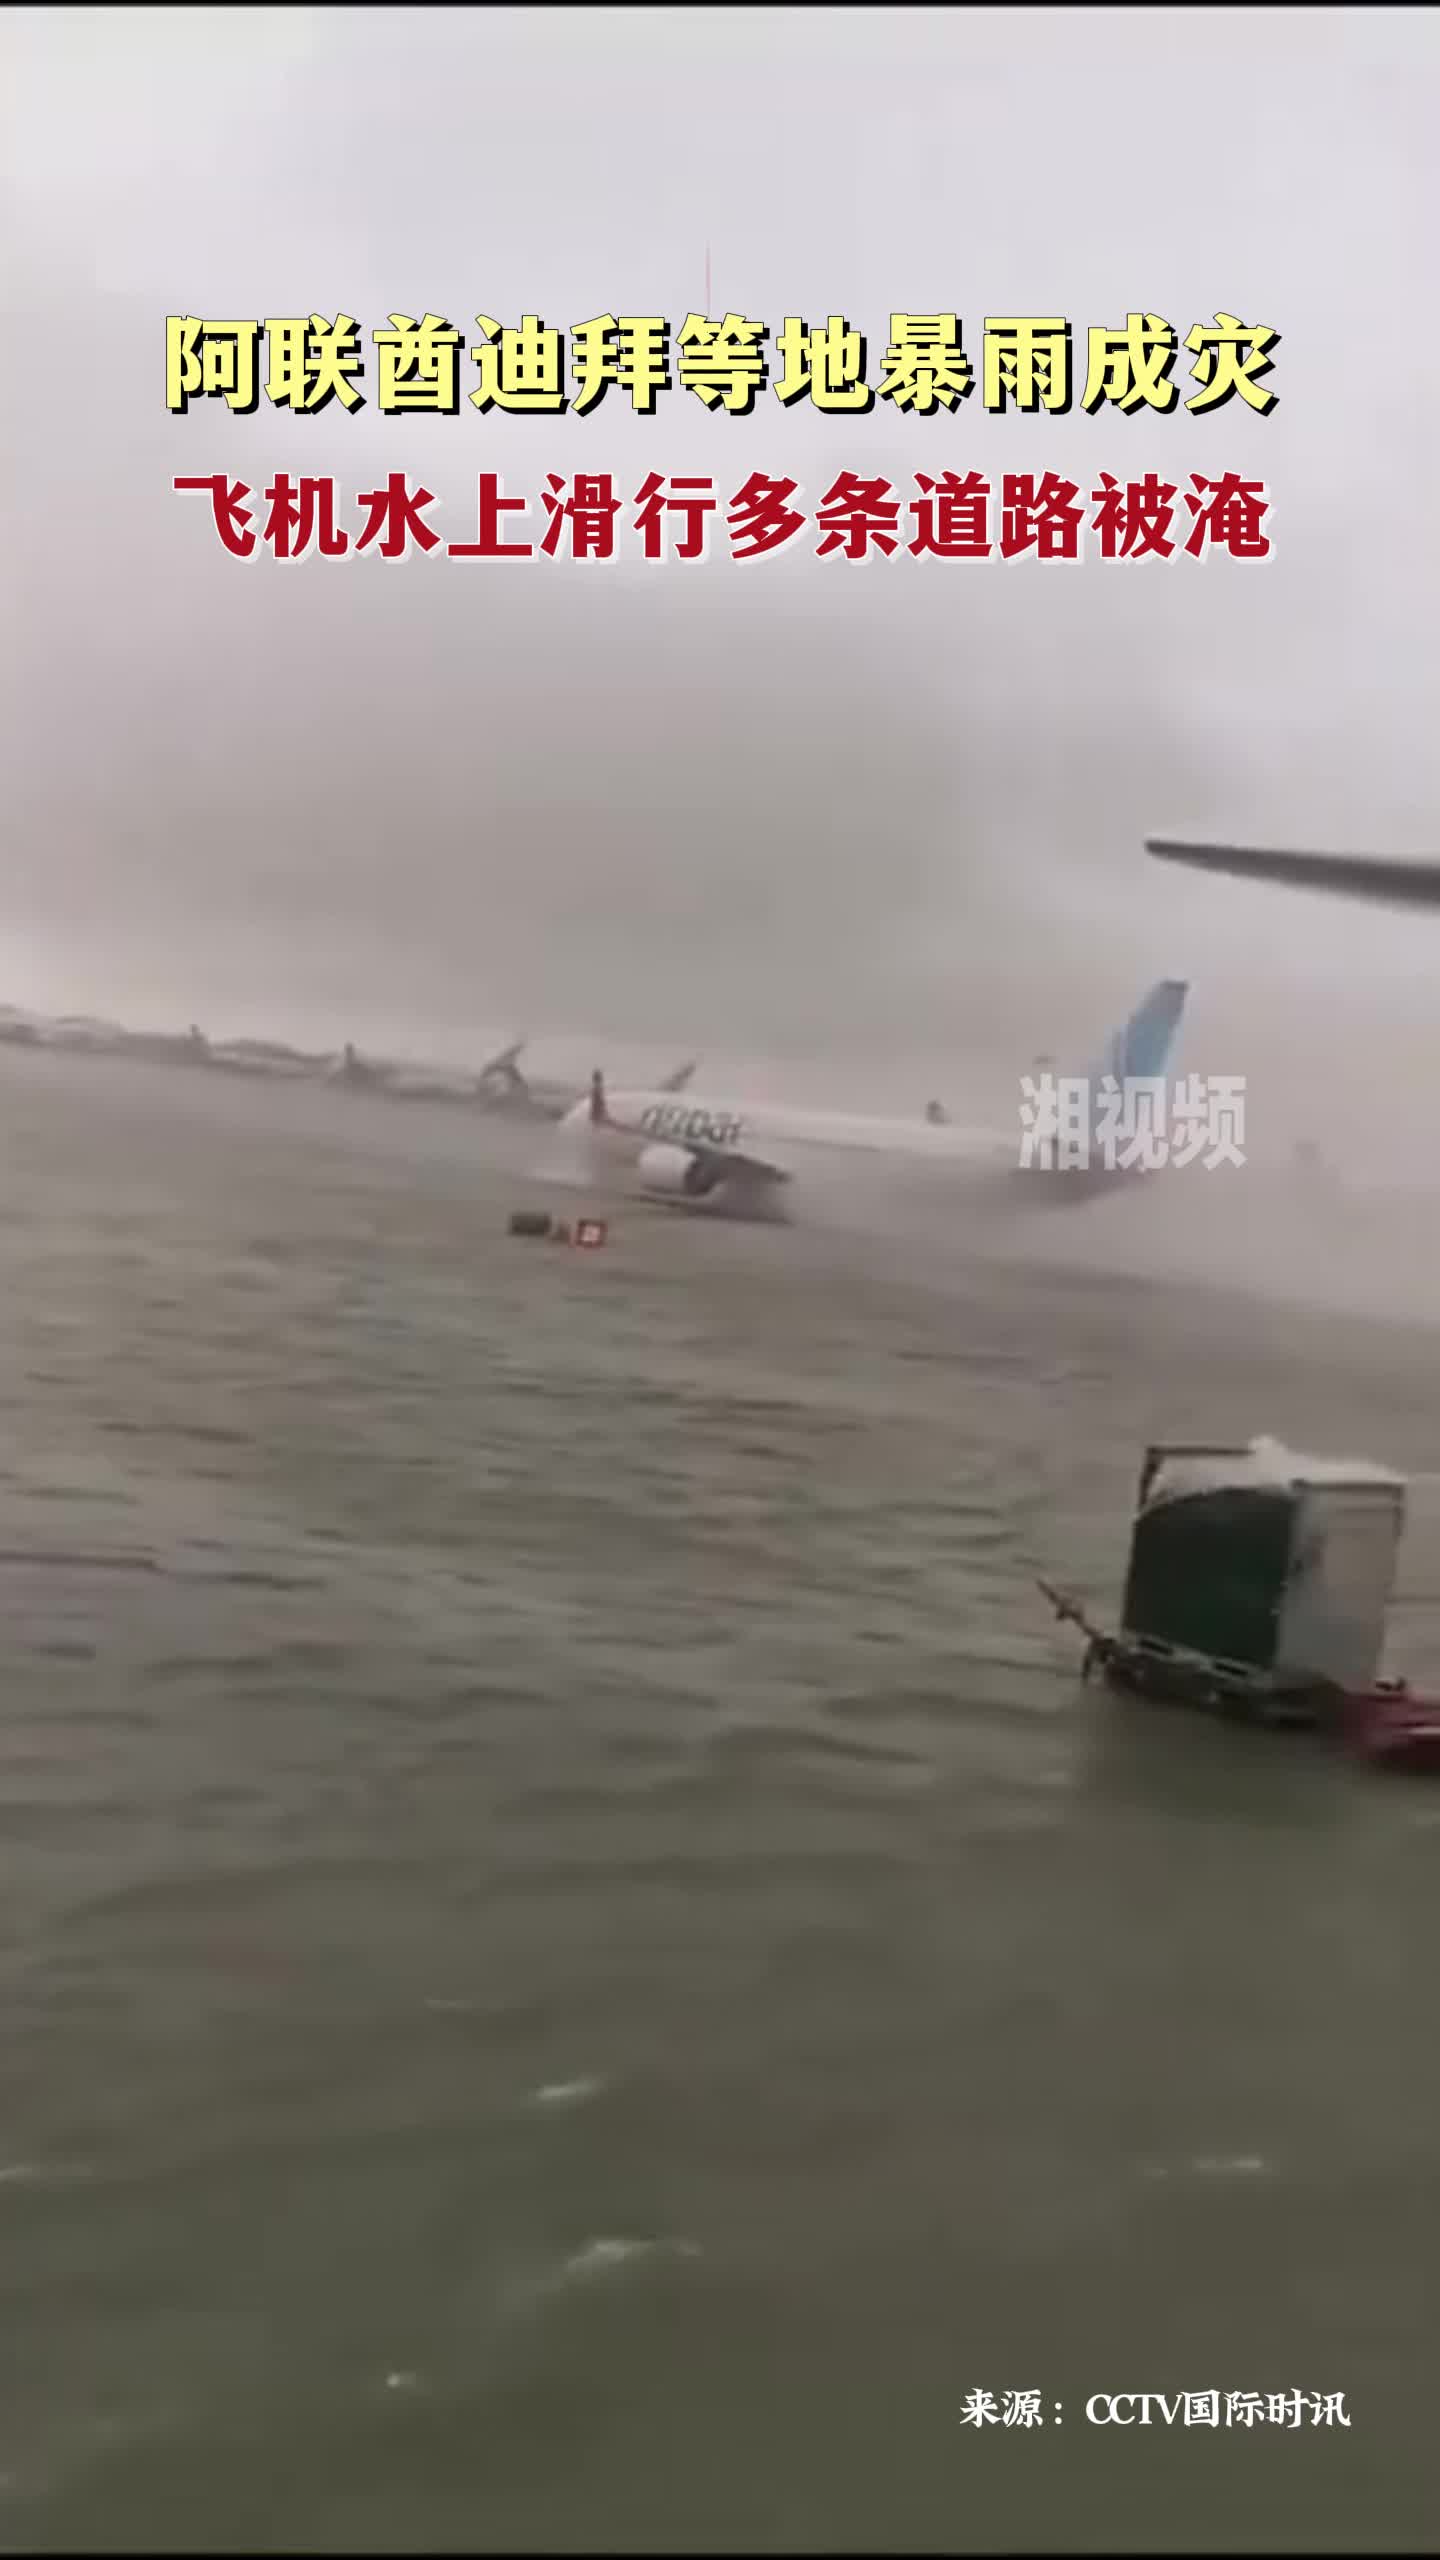 阿联酋迪拜等地暴雨成灾 飞机水上滑行多条道路被淹